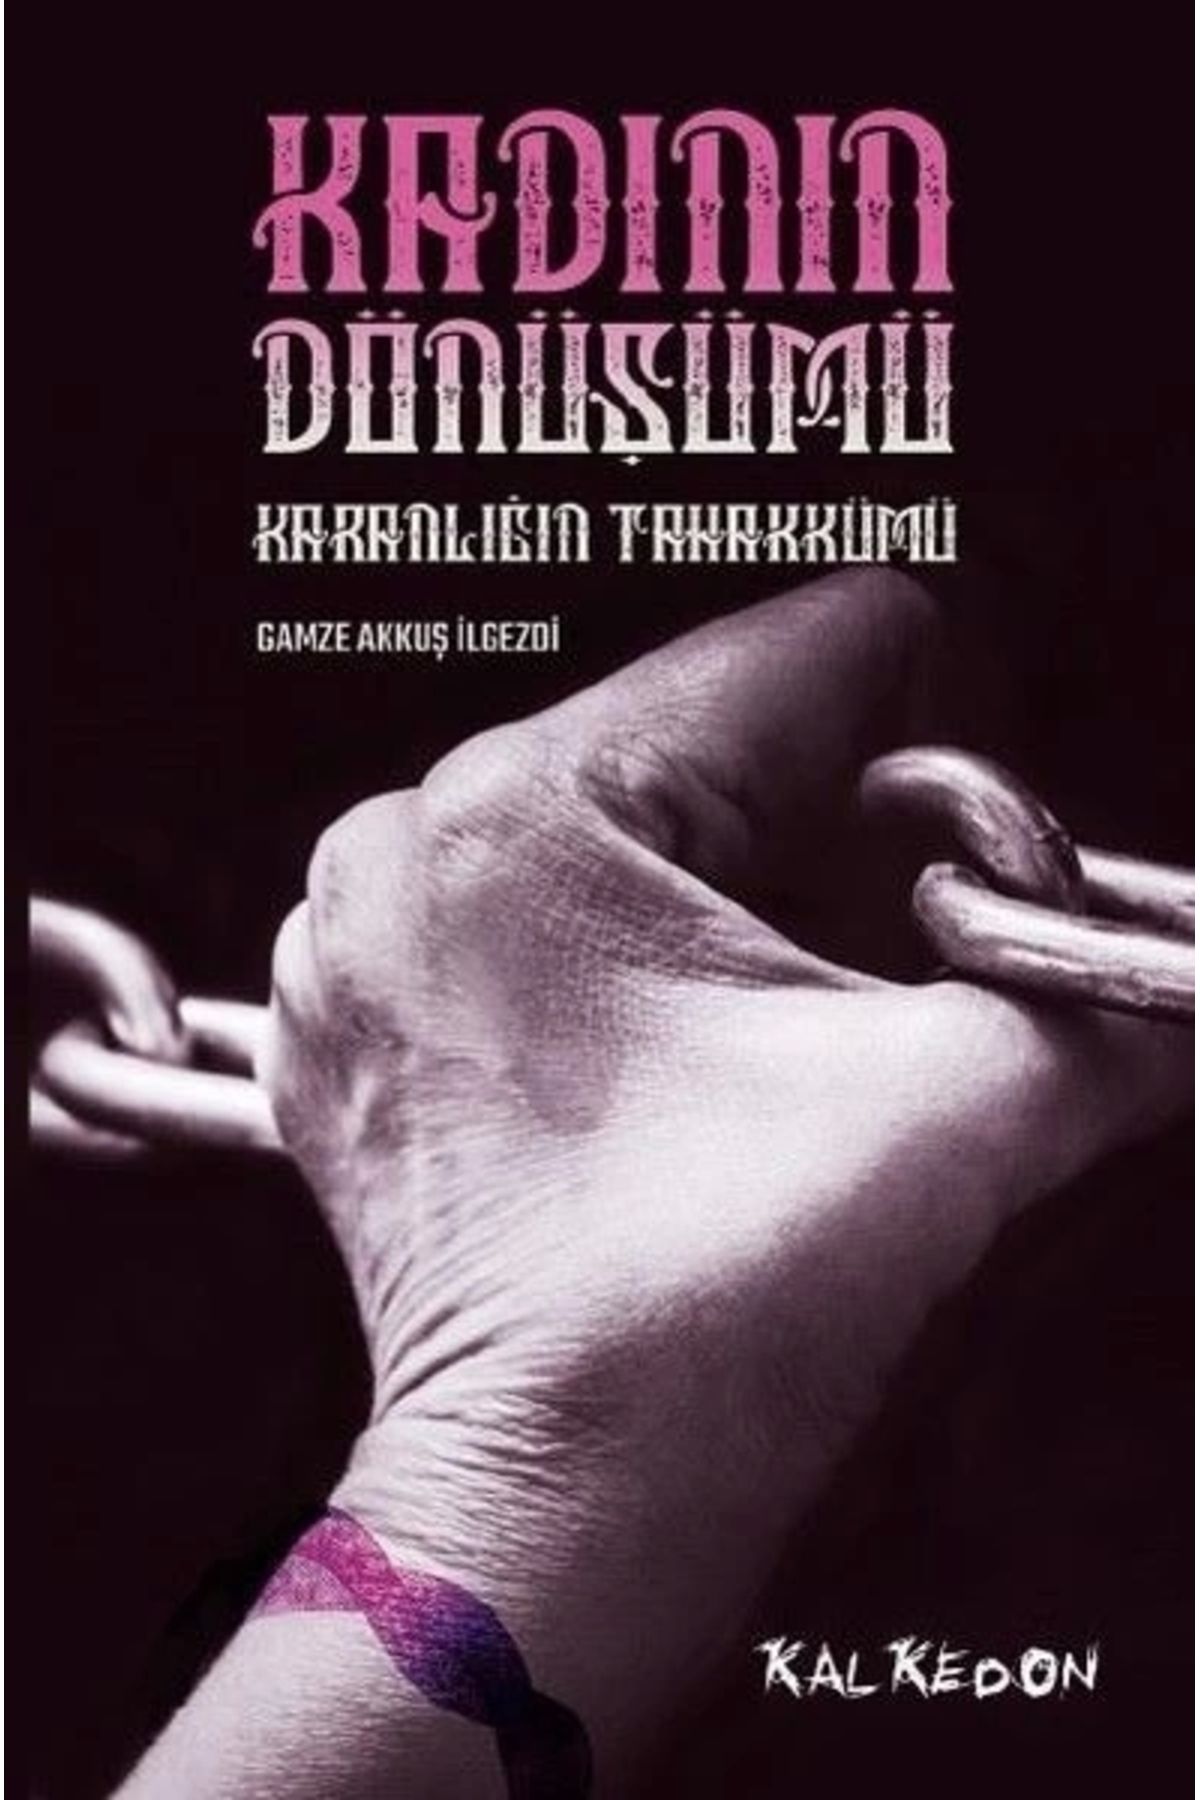 Kalkedon Yayınları Kadının Dönüşümü-karanlığın Tahakkümü